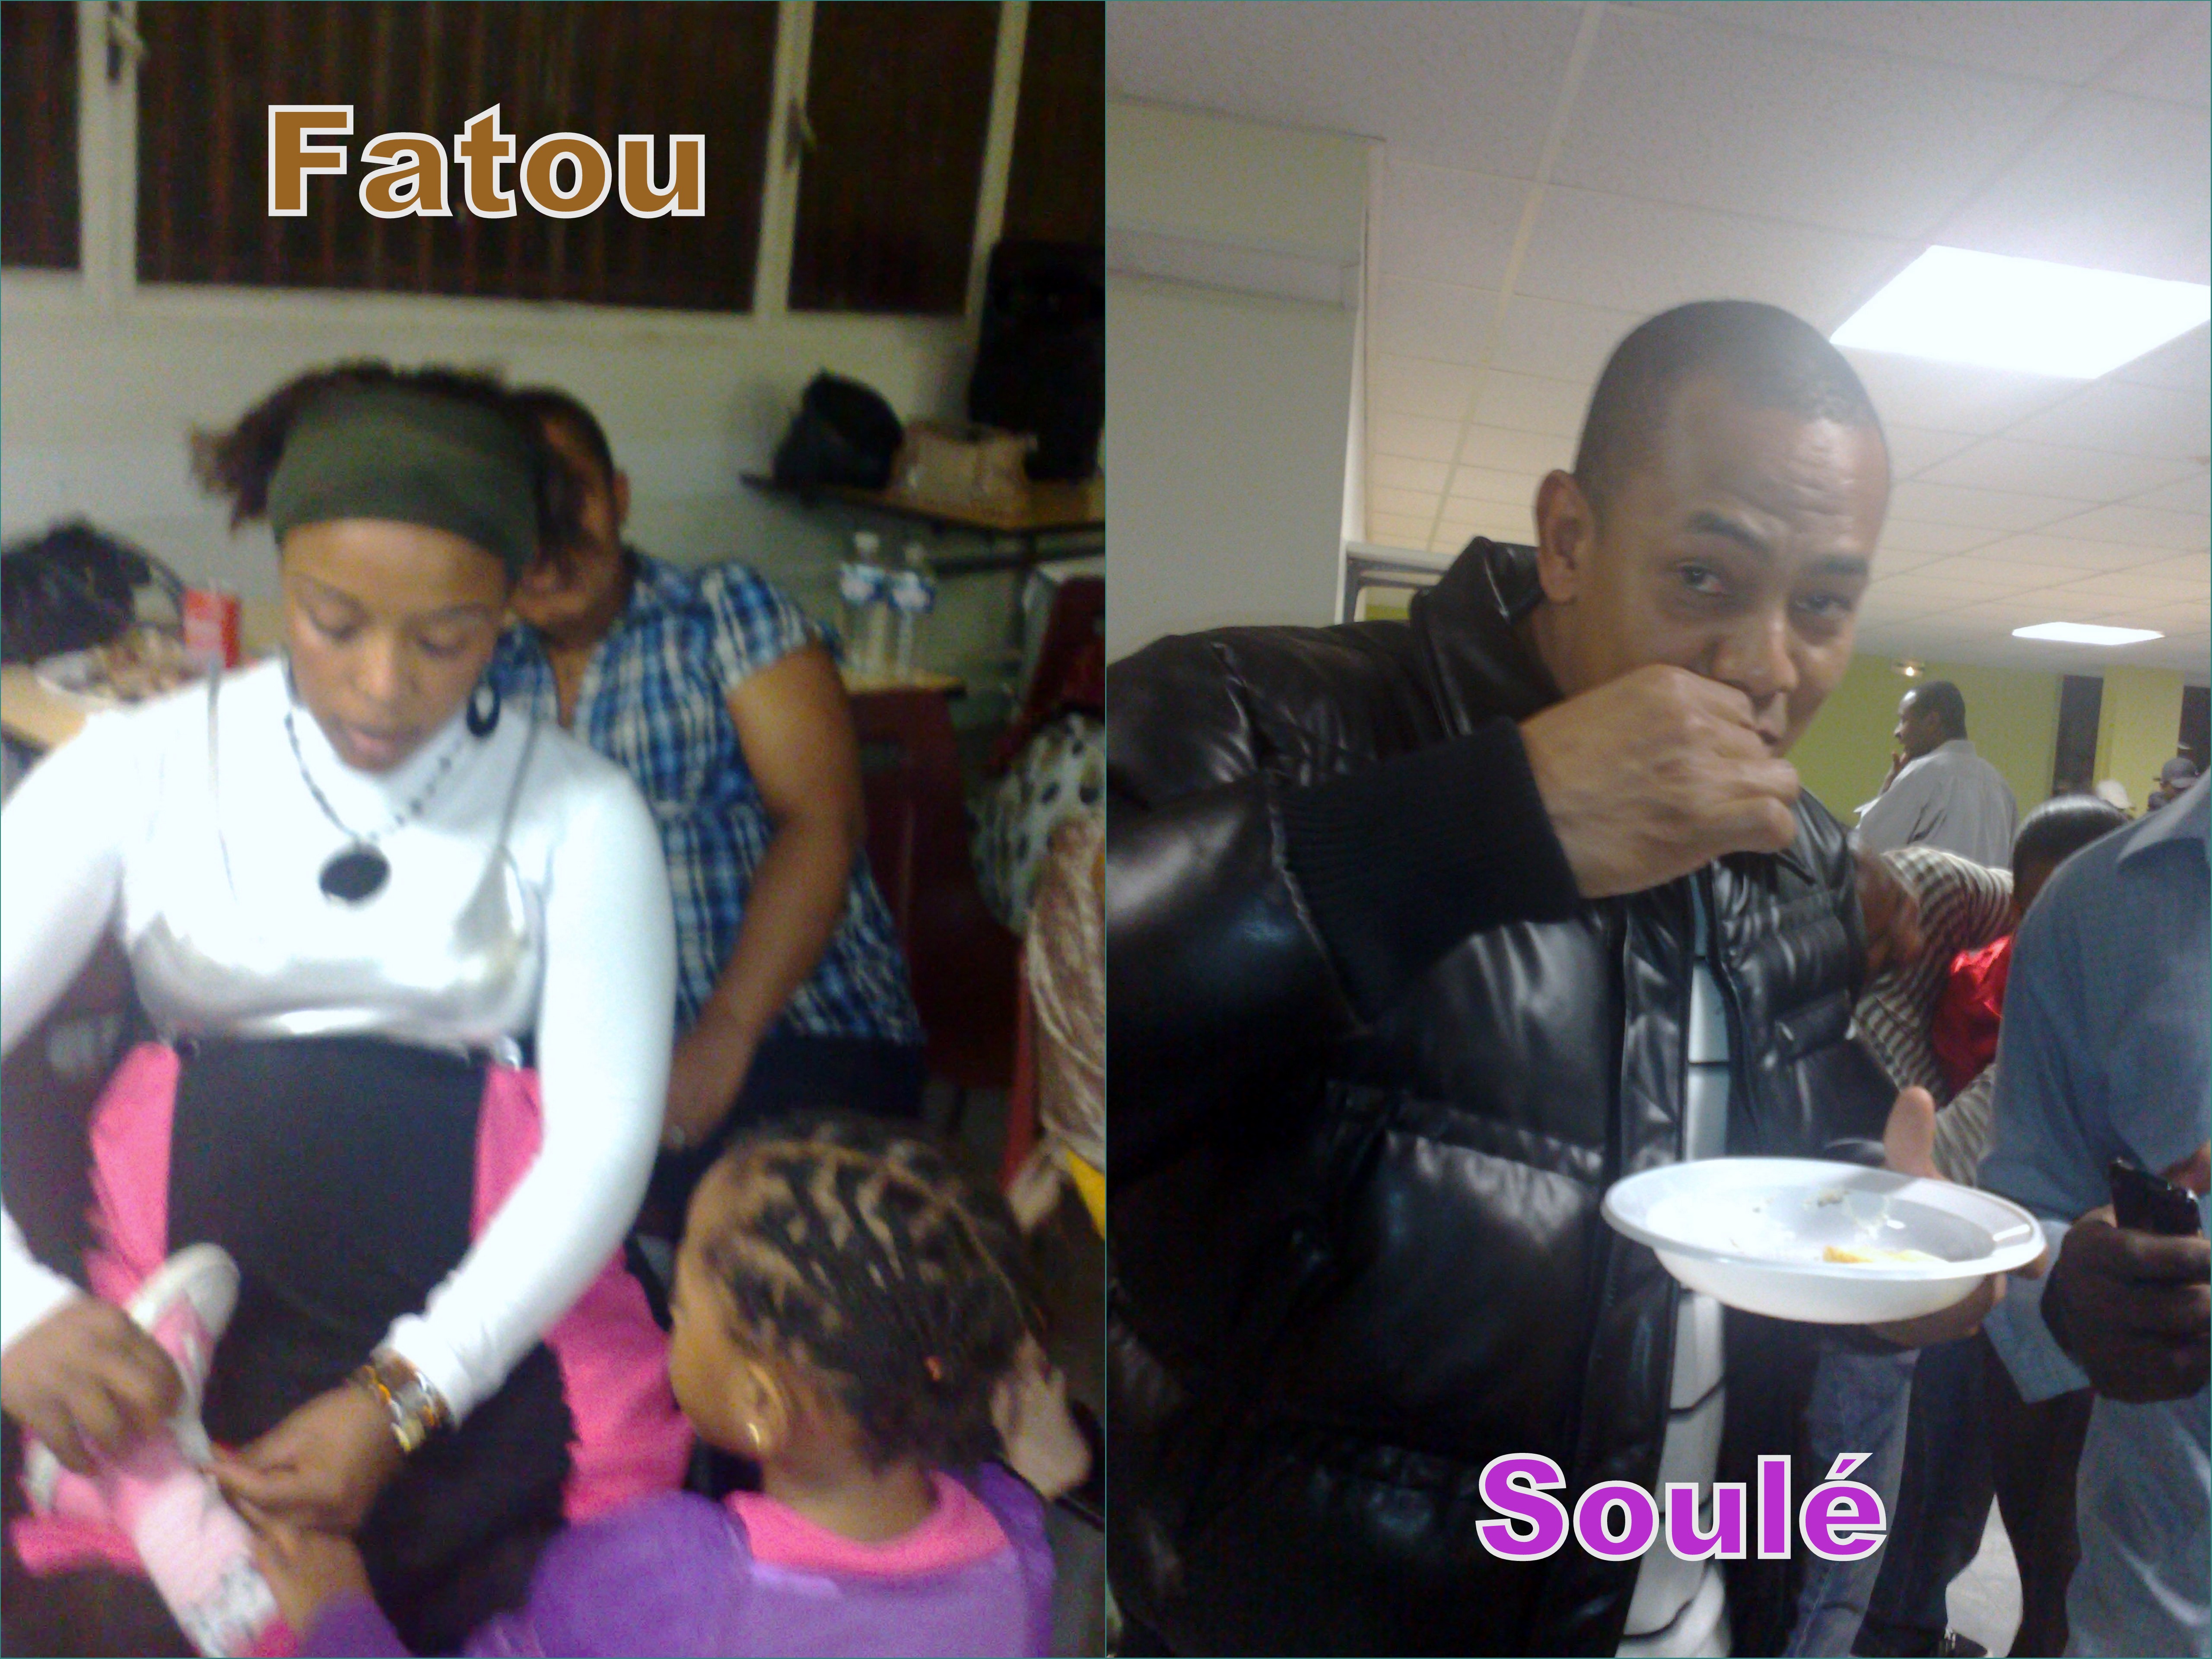 Fatou & Soul